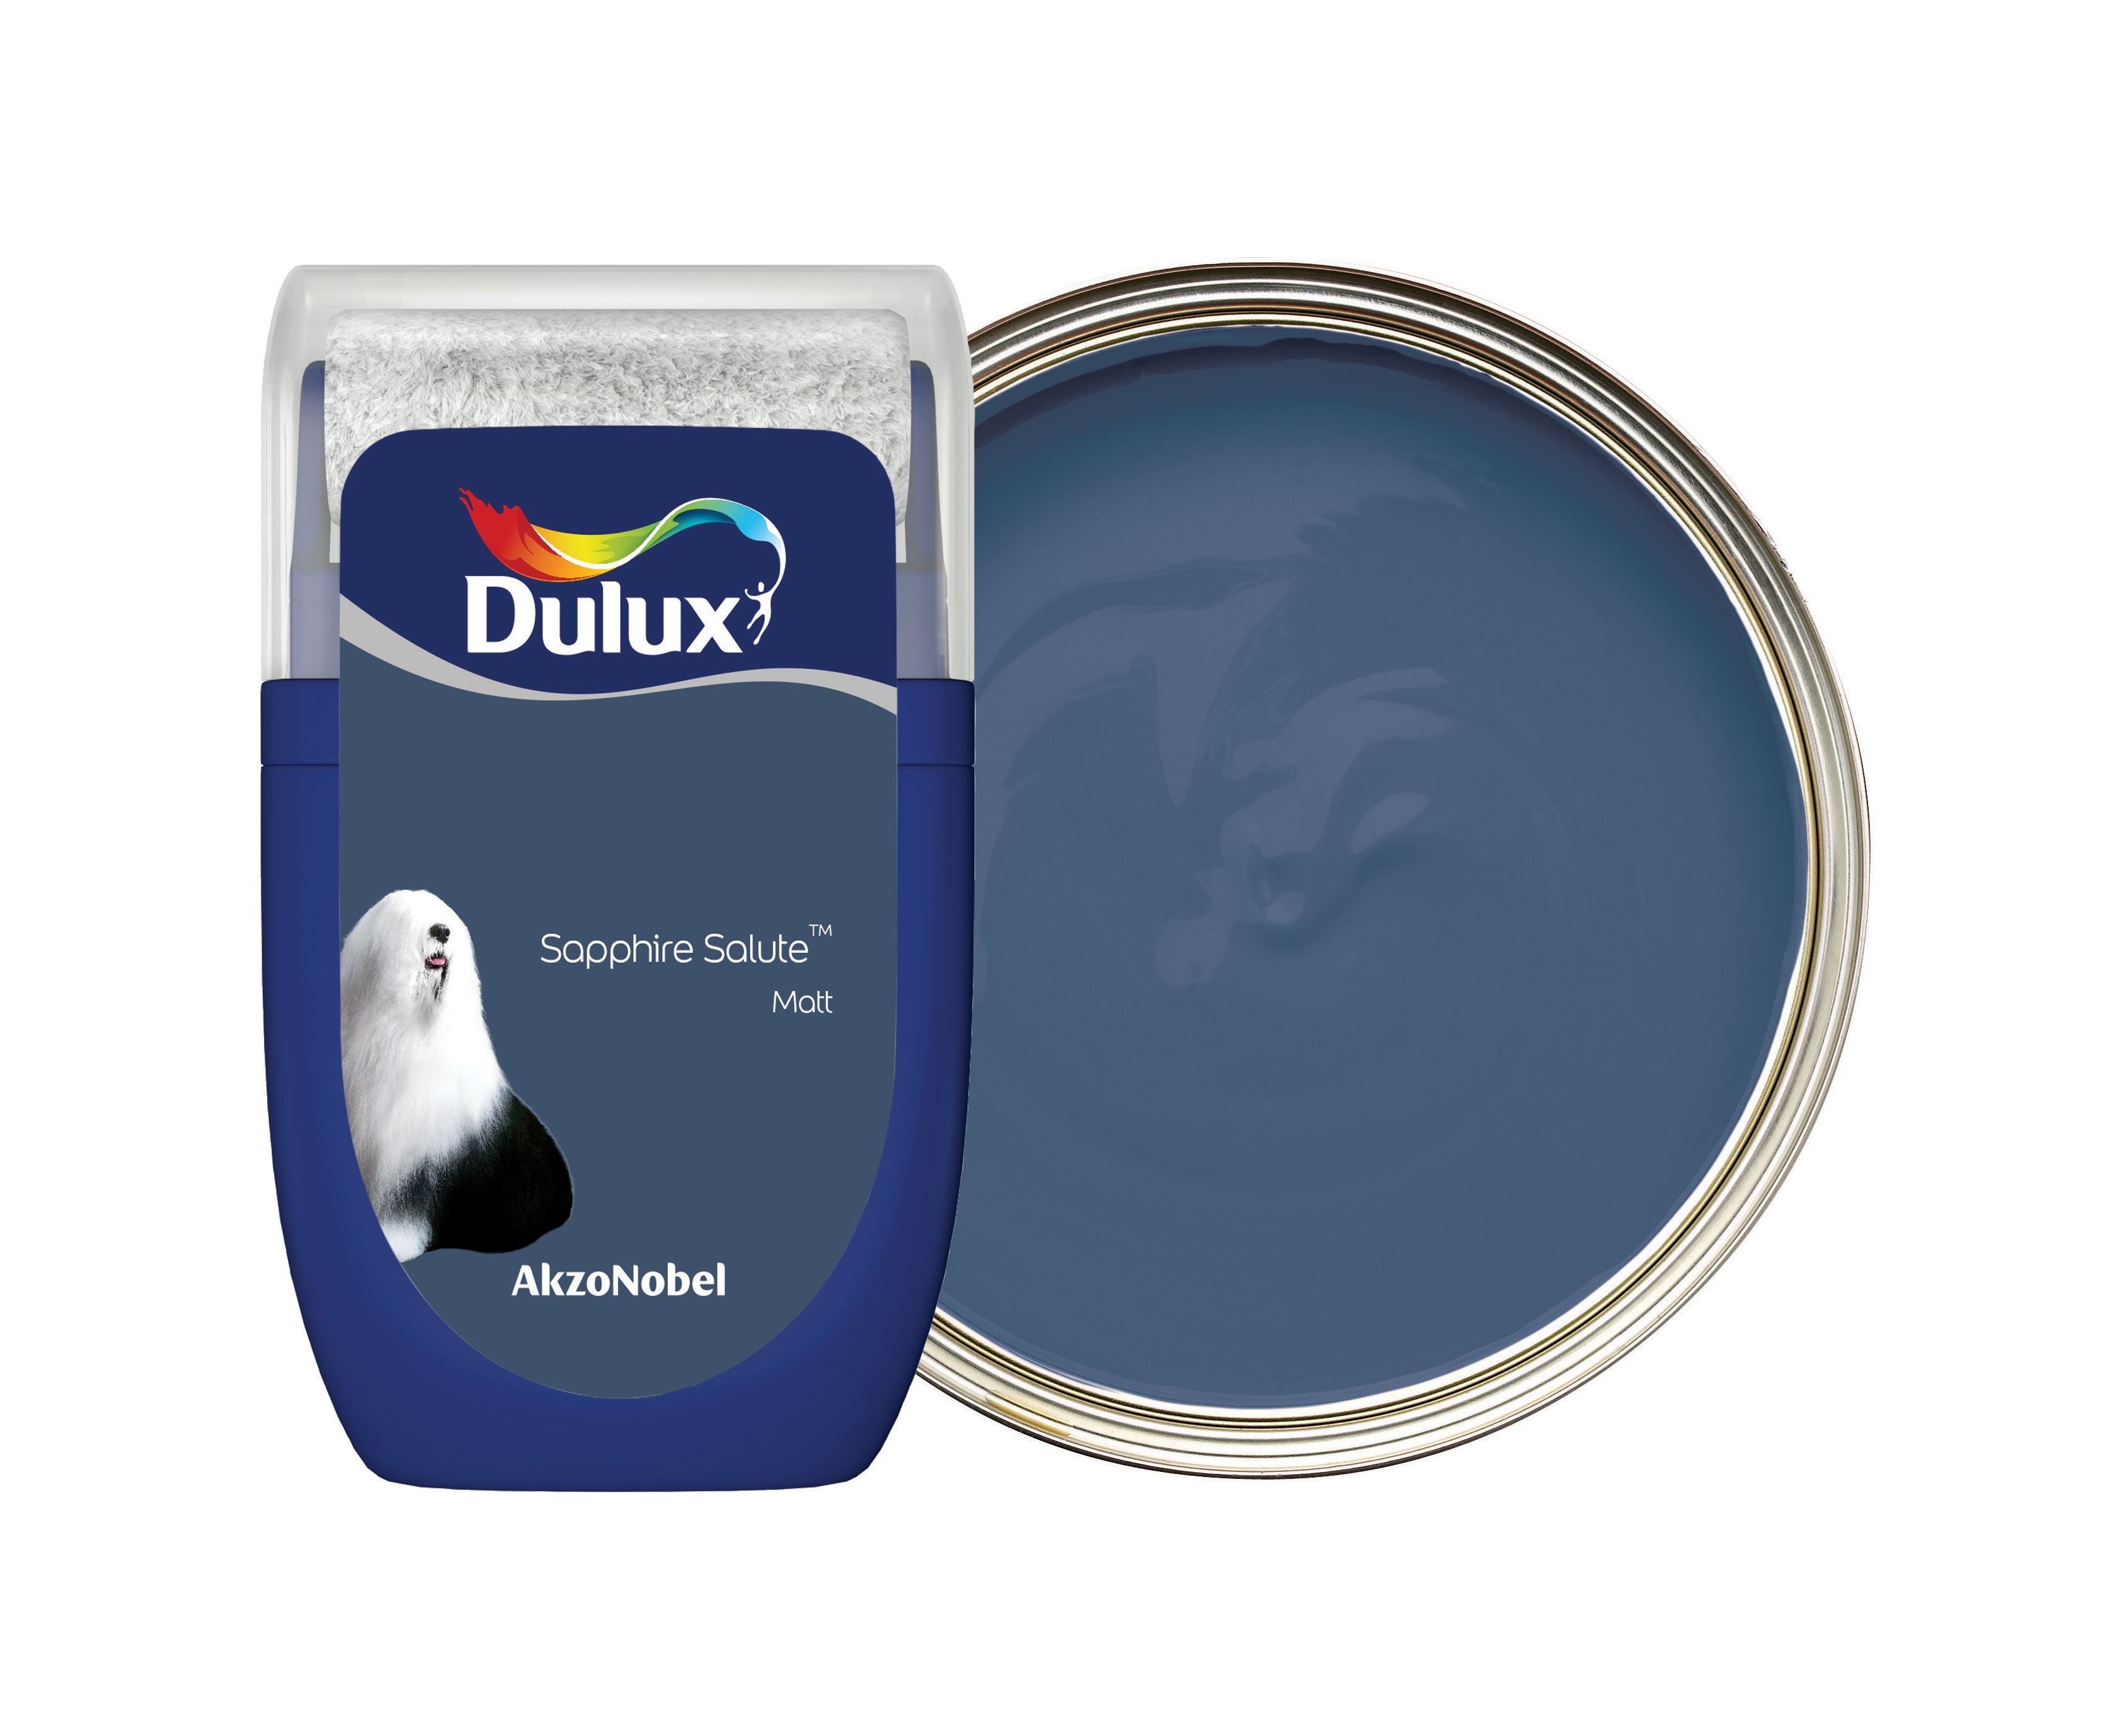 Dulux Emulsion Paint Tester Pot - Sapphire Salute - 30ml